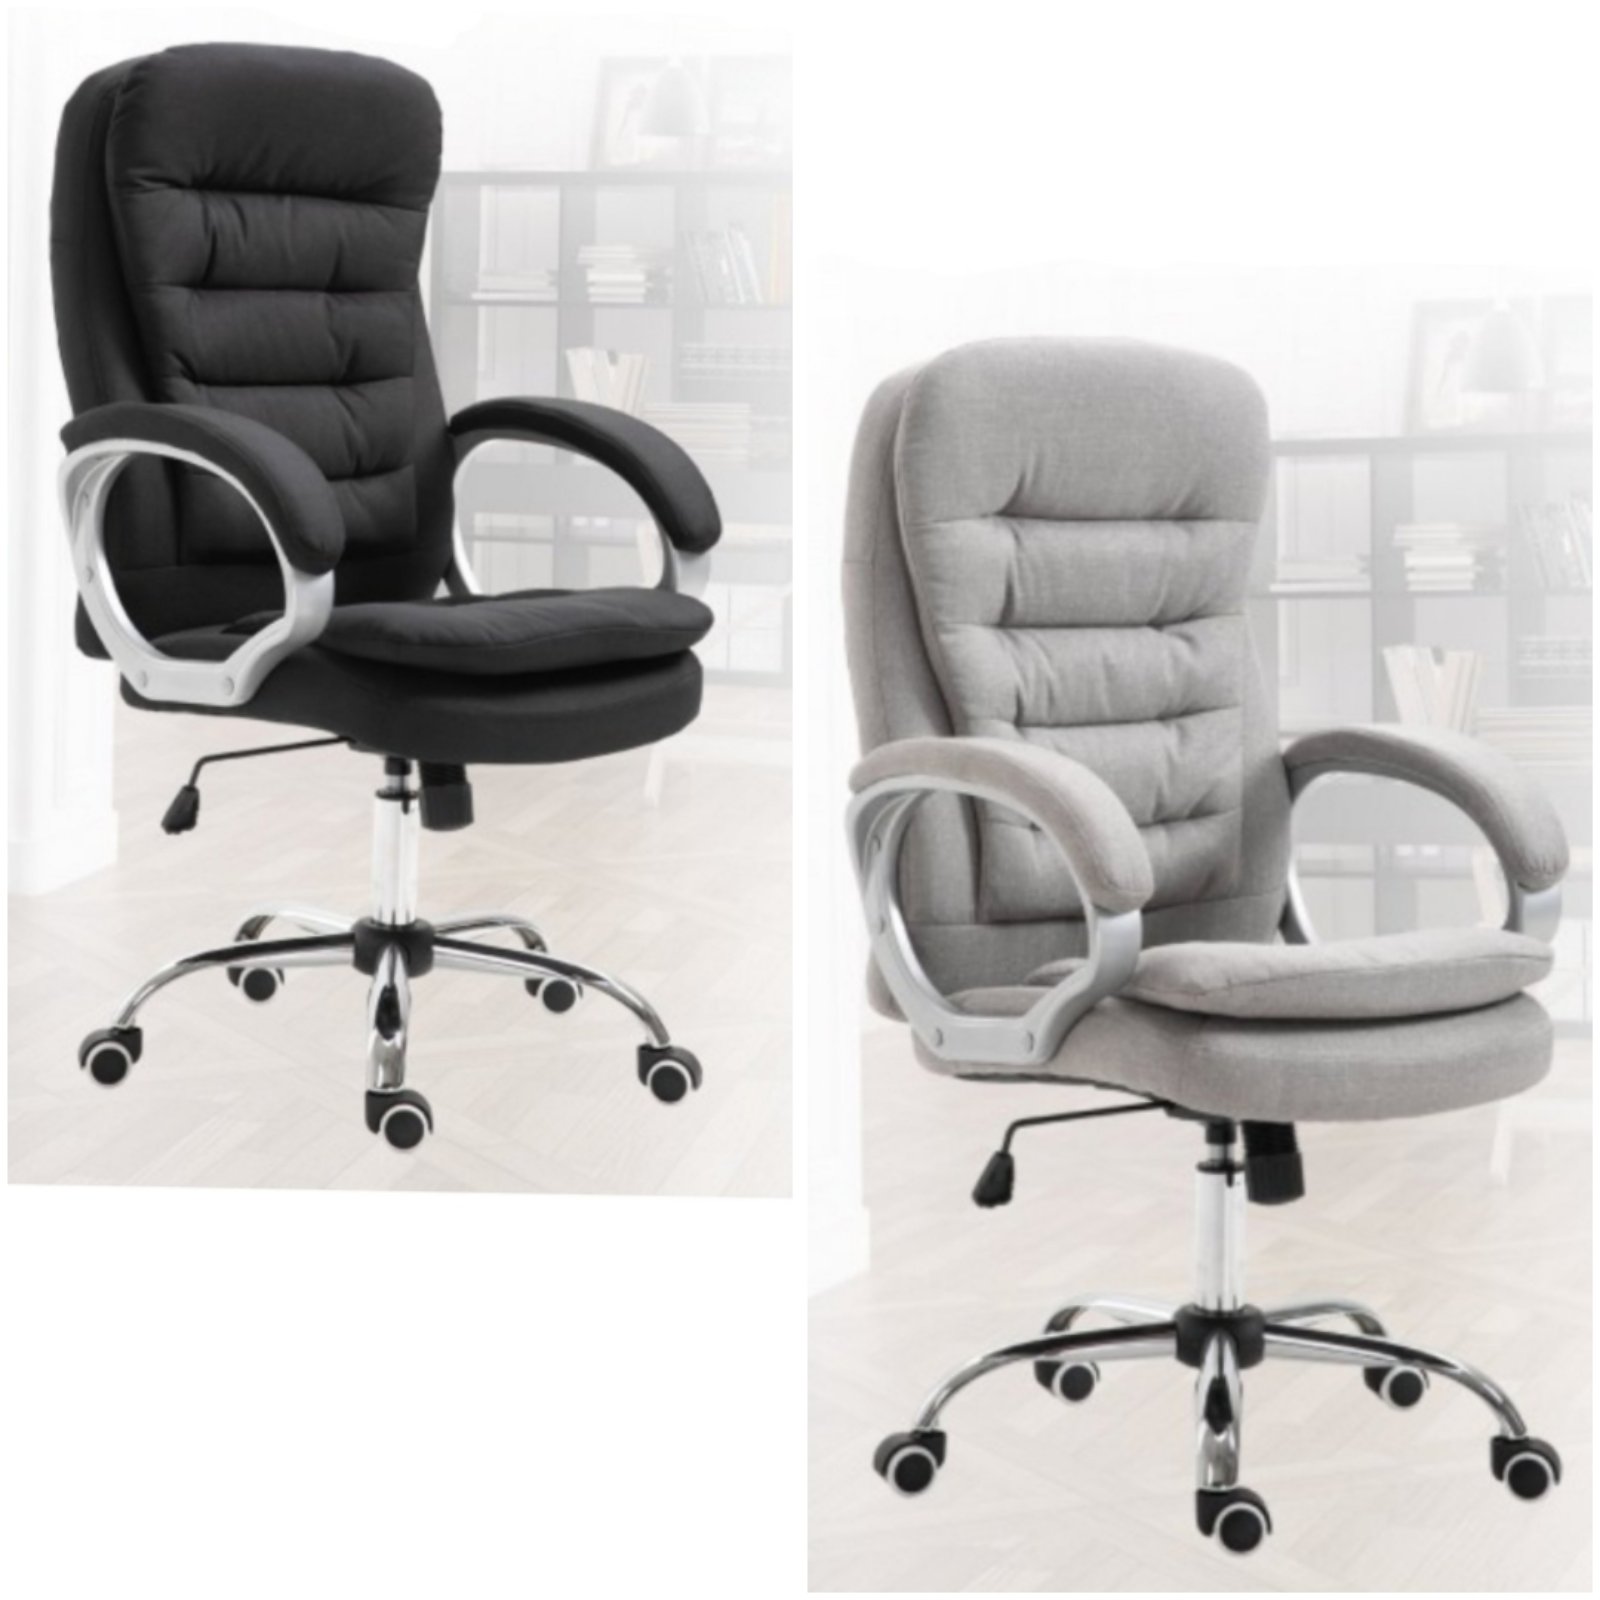 Wipp irodai forgós szék , állítható magassággal és billenő mechanizmussal fekete és szürke színben